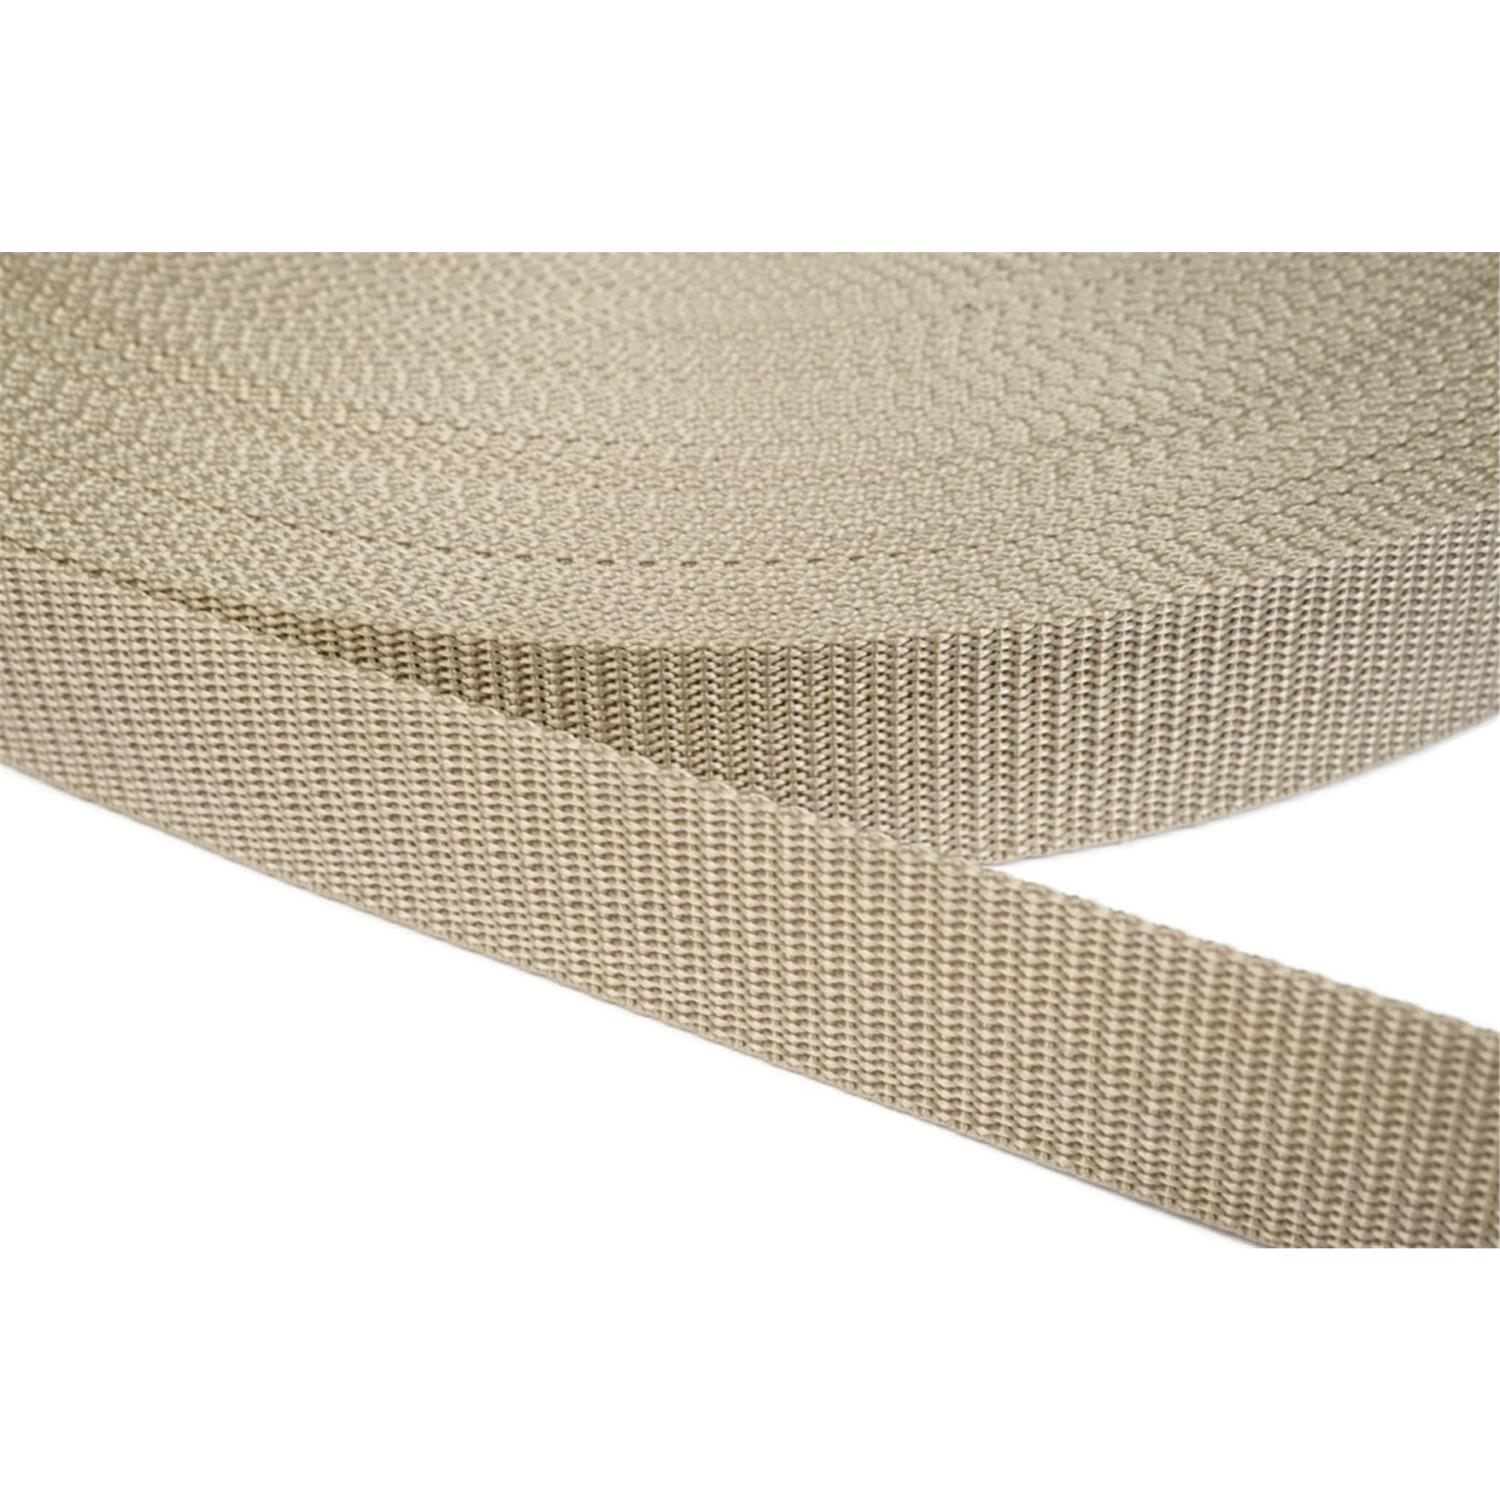 Gurtband 40mm breit aus Polypropylen in 41 Farben 03 - beige 50 Meter